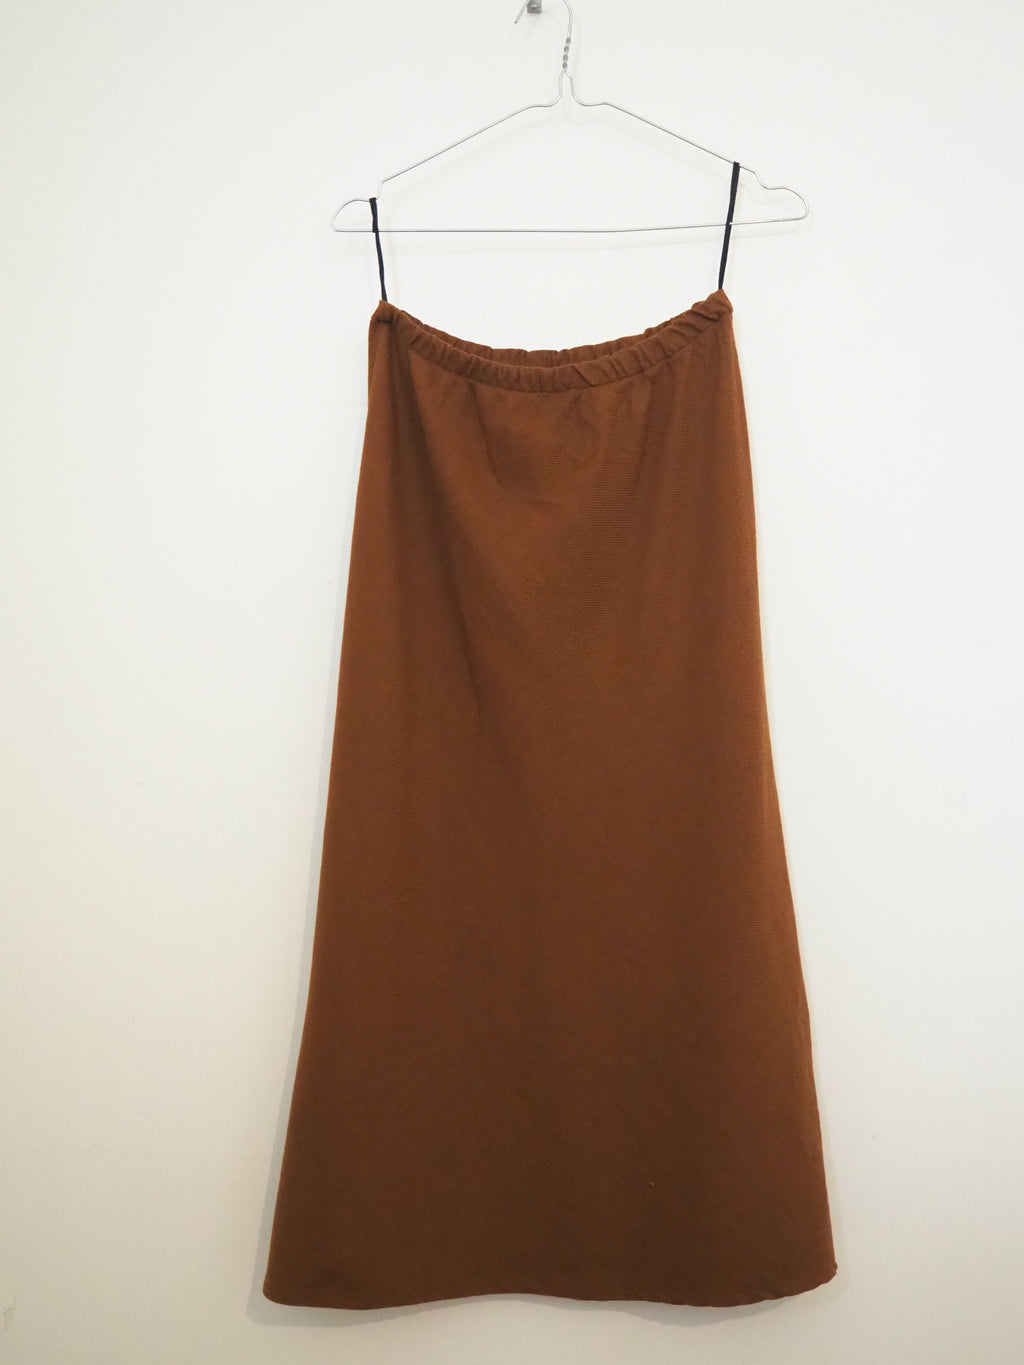 Norah skirt - Copper